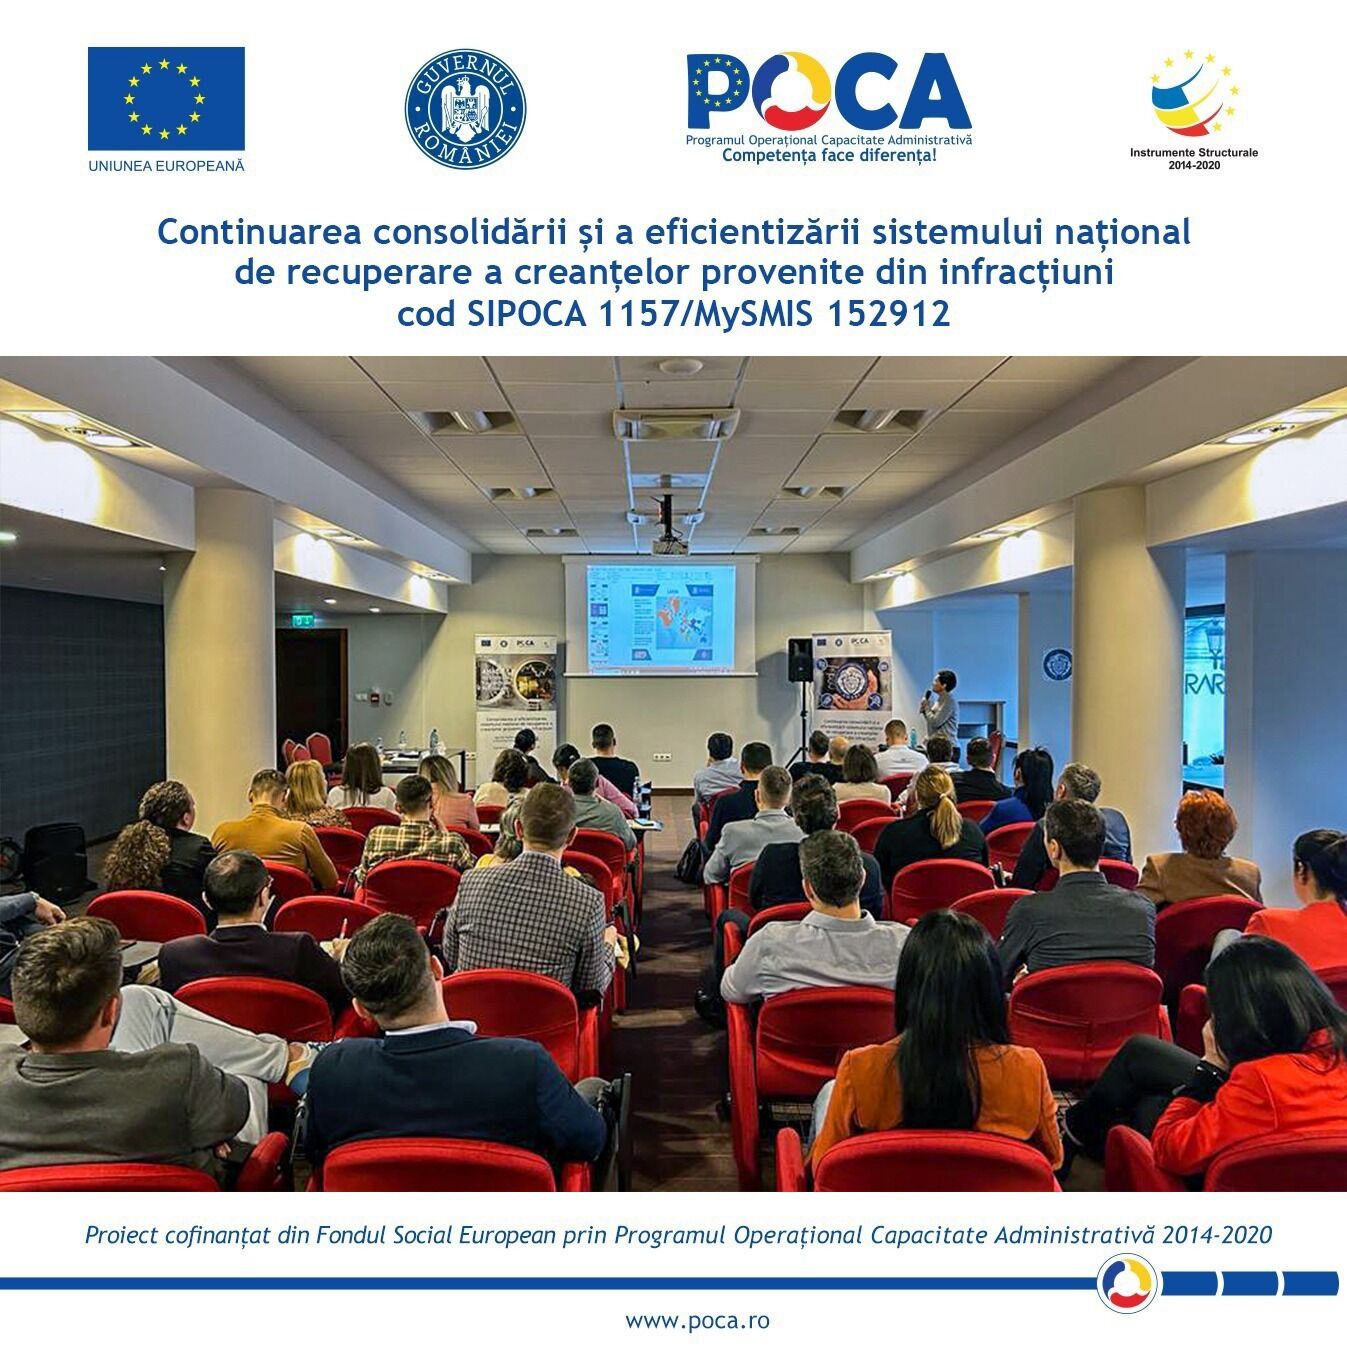 Conferința regională organizată la Alba Iulia în cadrul proiectului  „Continuarea consolidării și a eficientizării sistemului național  de recuperare a creanțelor provenite din infracțiuni”